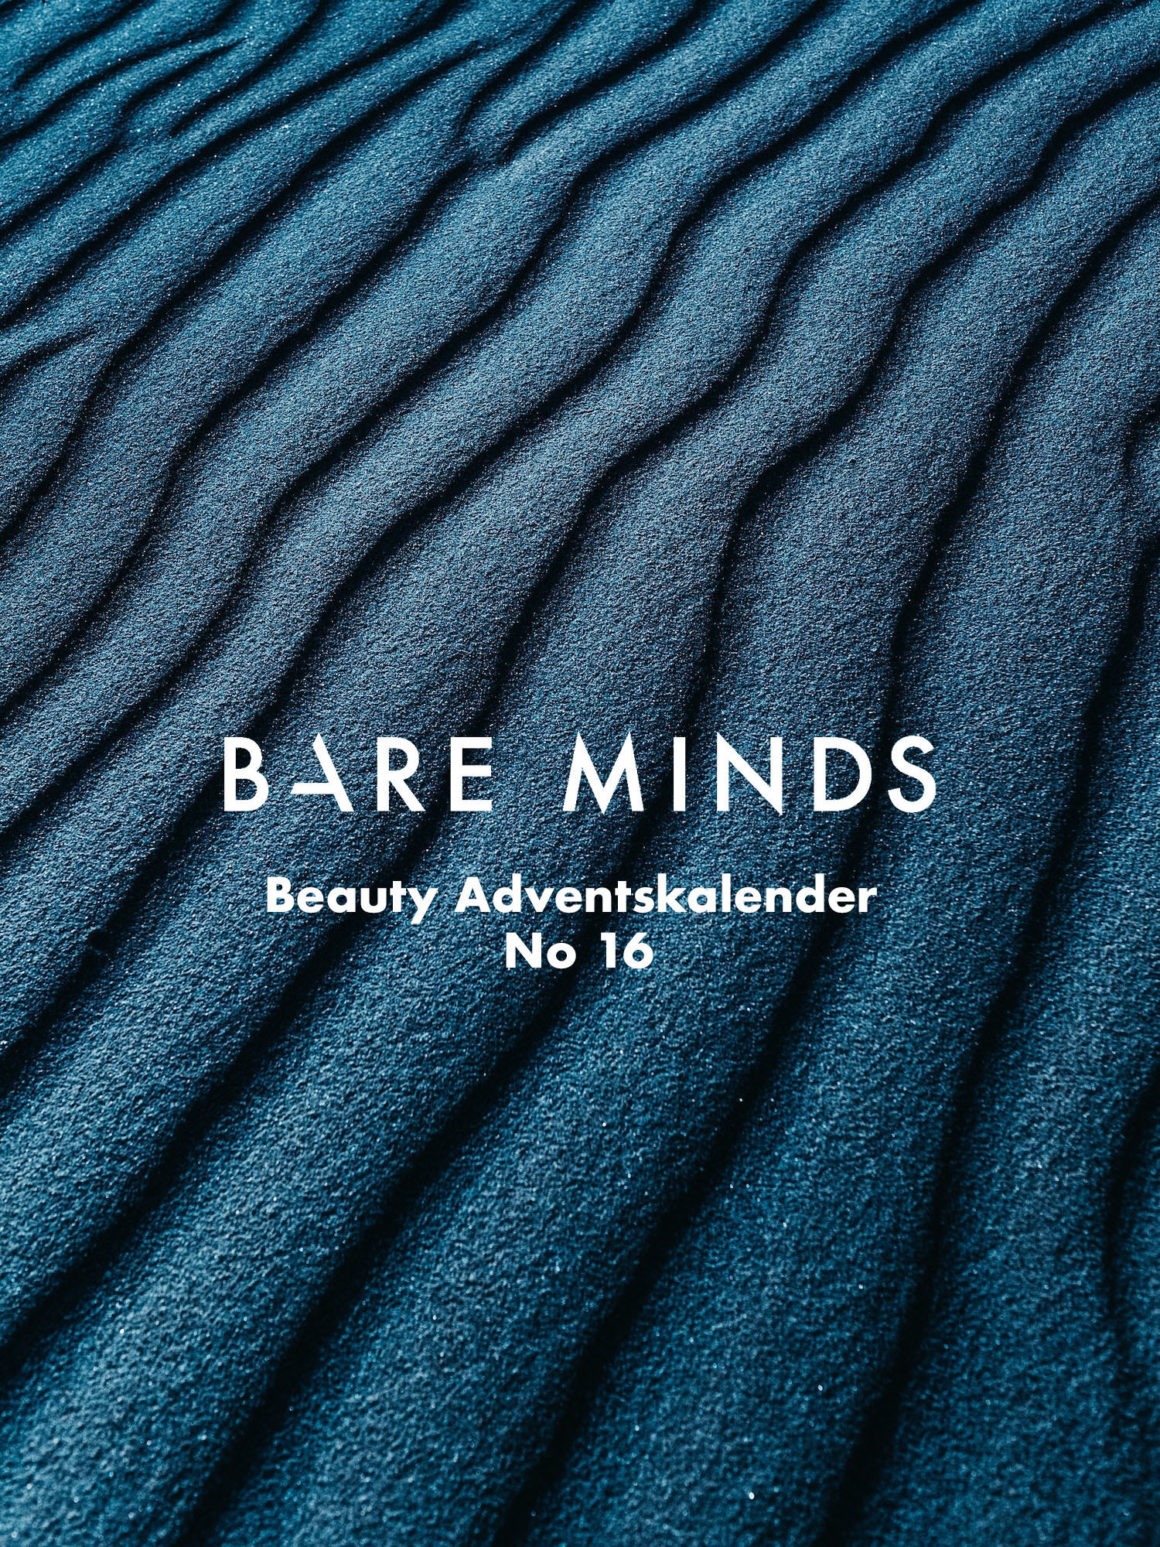 Bare Minds Beauty Adventskalender 2019 016_